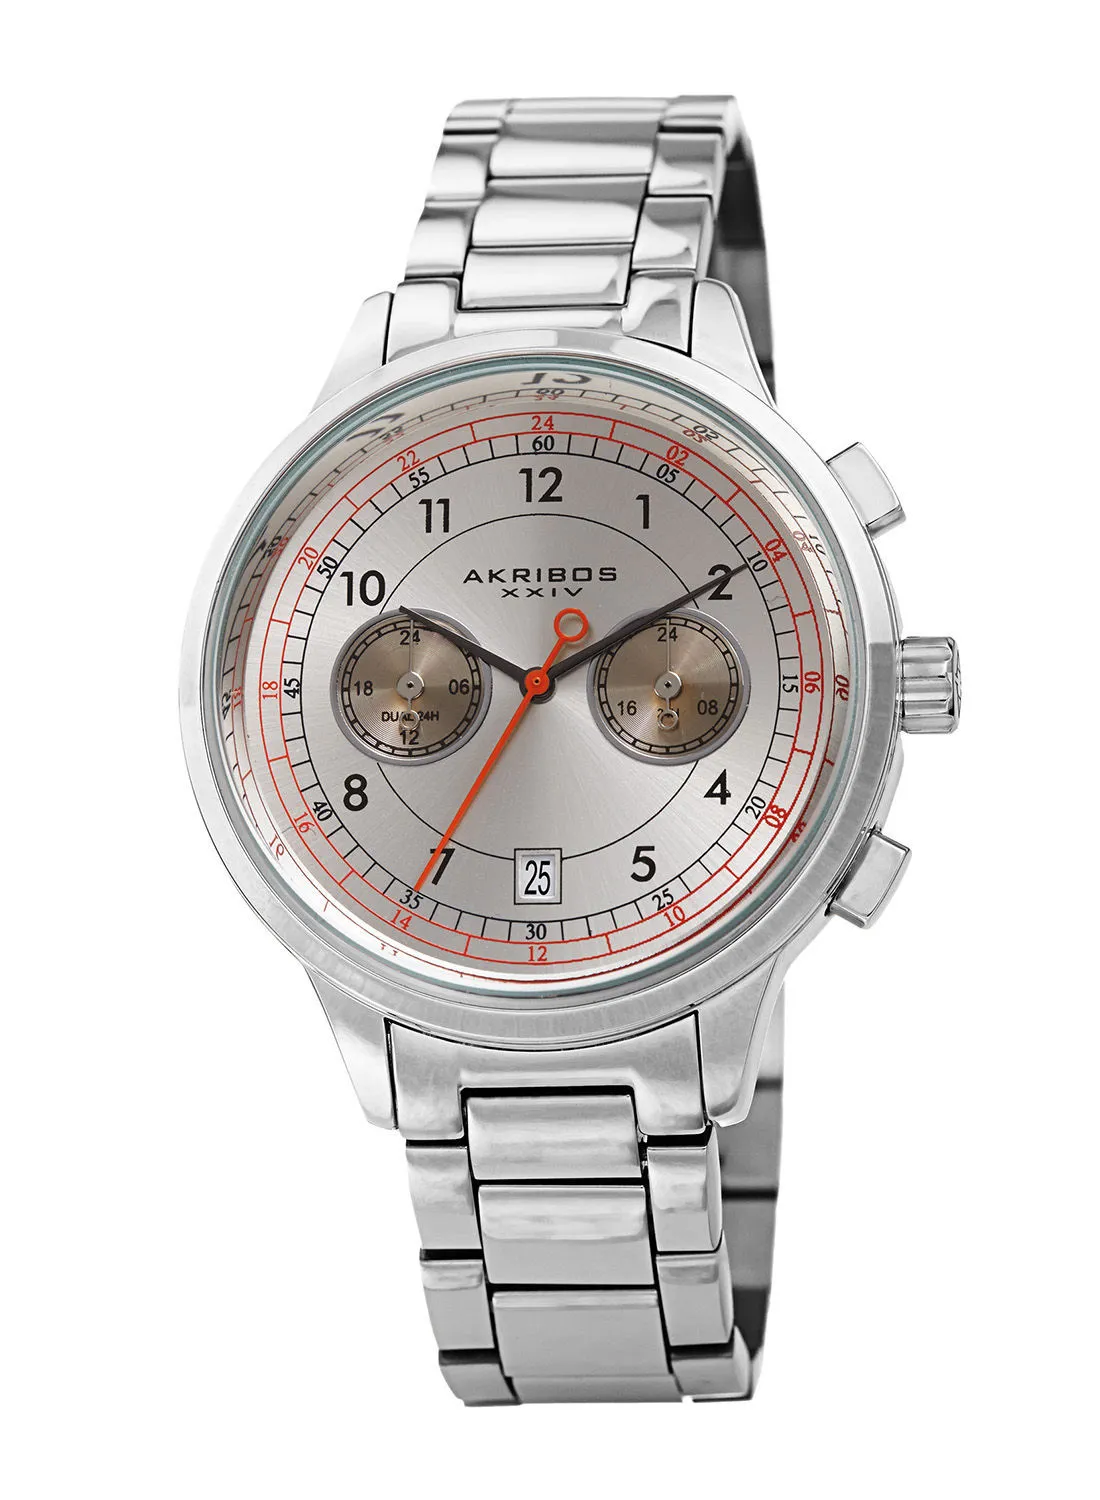 Akribos XXIV Stainless Steel Chronograph Wrist Watch AK1071SS